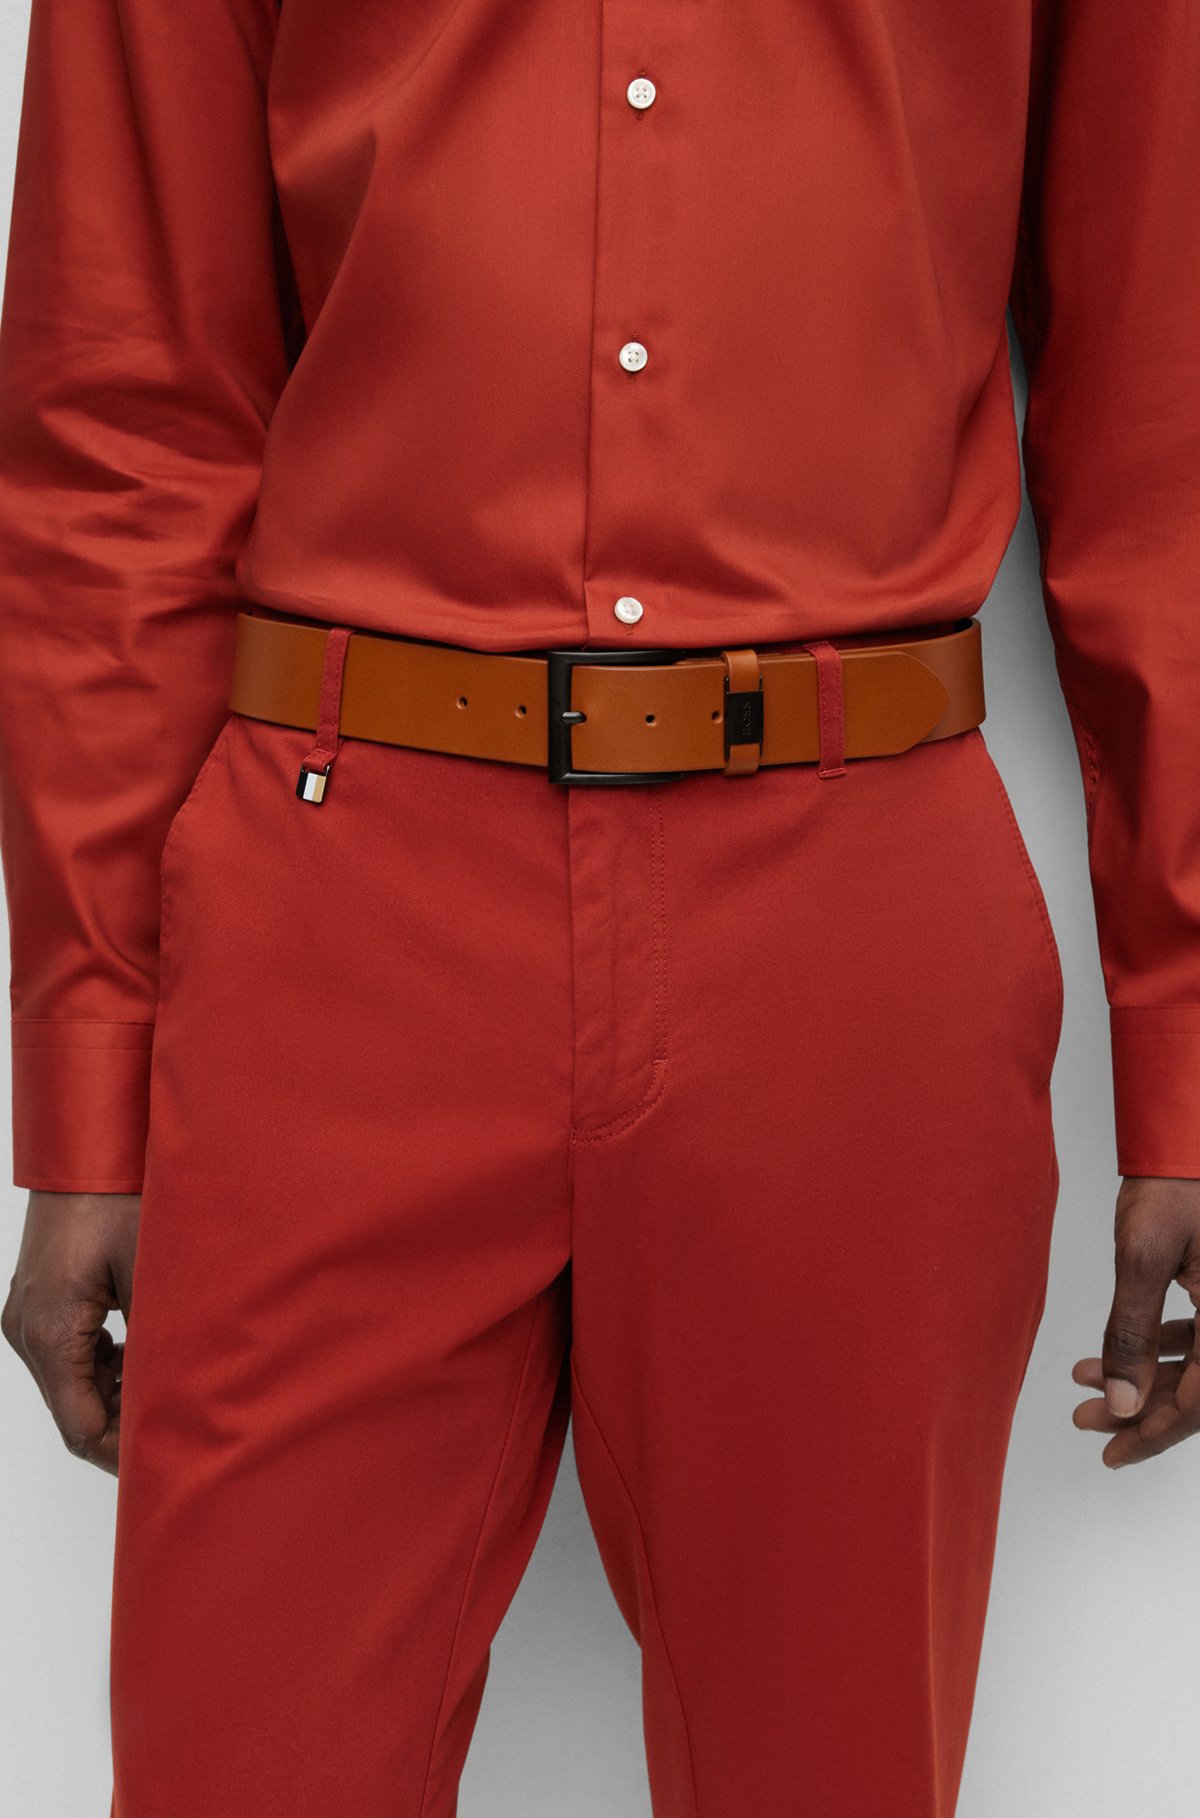 Cinturón de piel italiana con detalle de la marca en la trabilla, Marrón